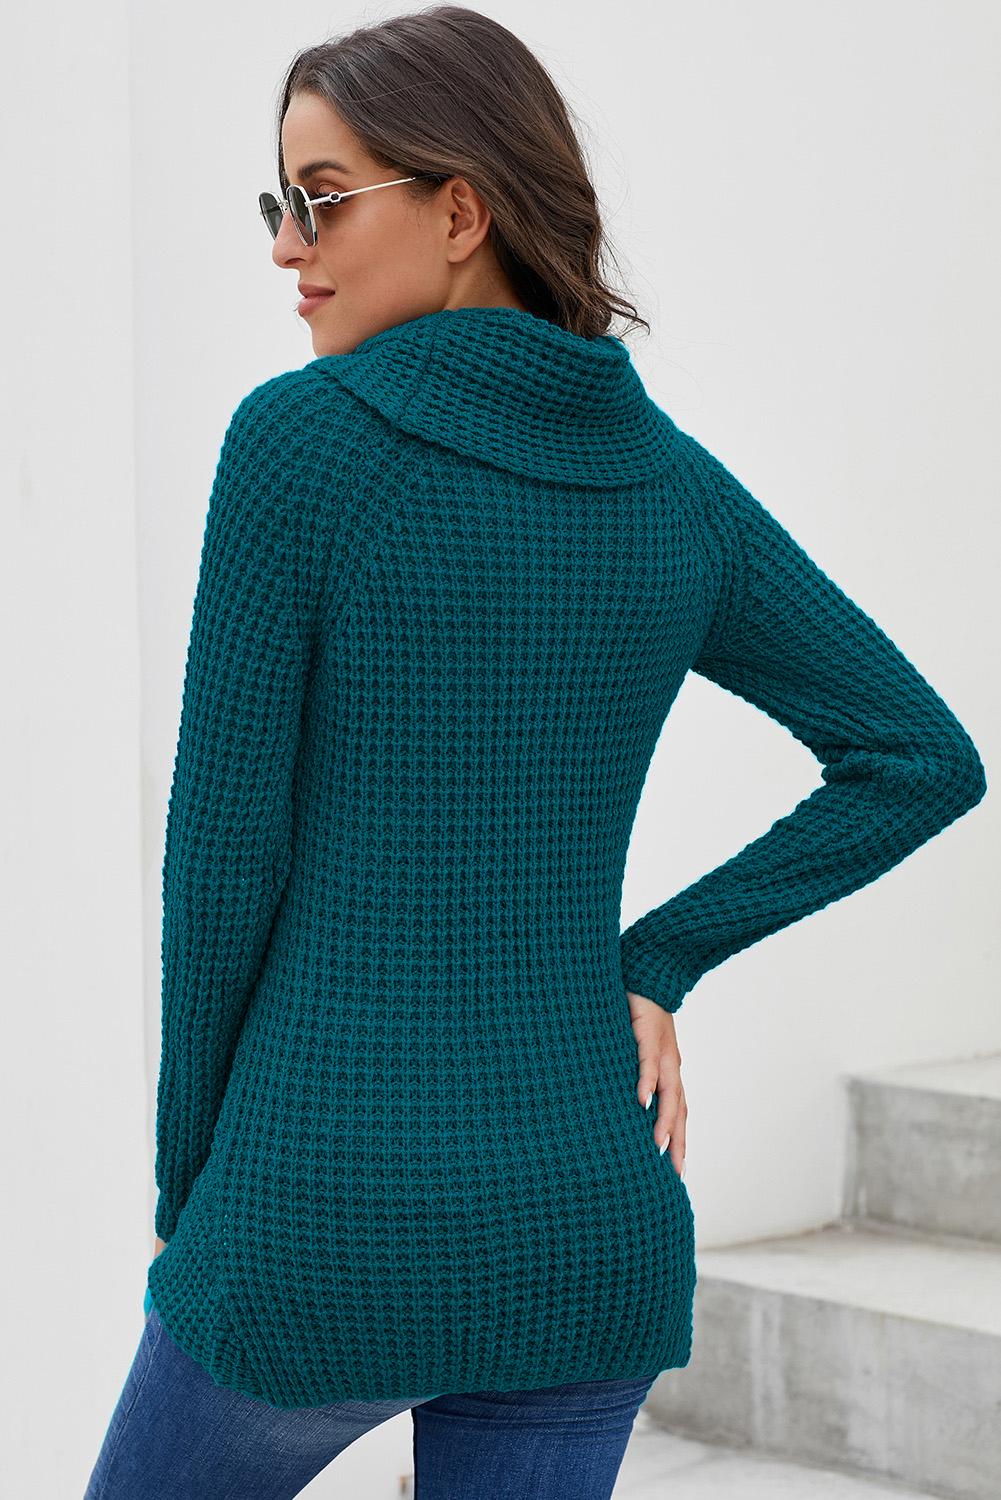 Women's Buttoned Wrap Sweater Turtleneck Sweater Jumper